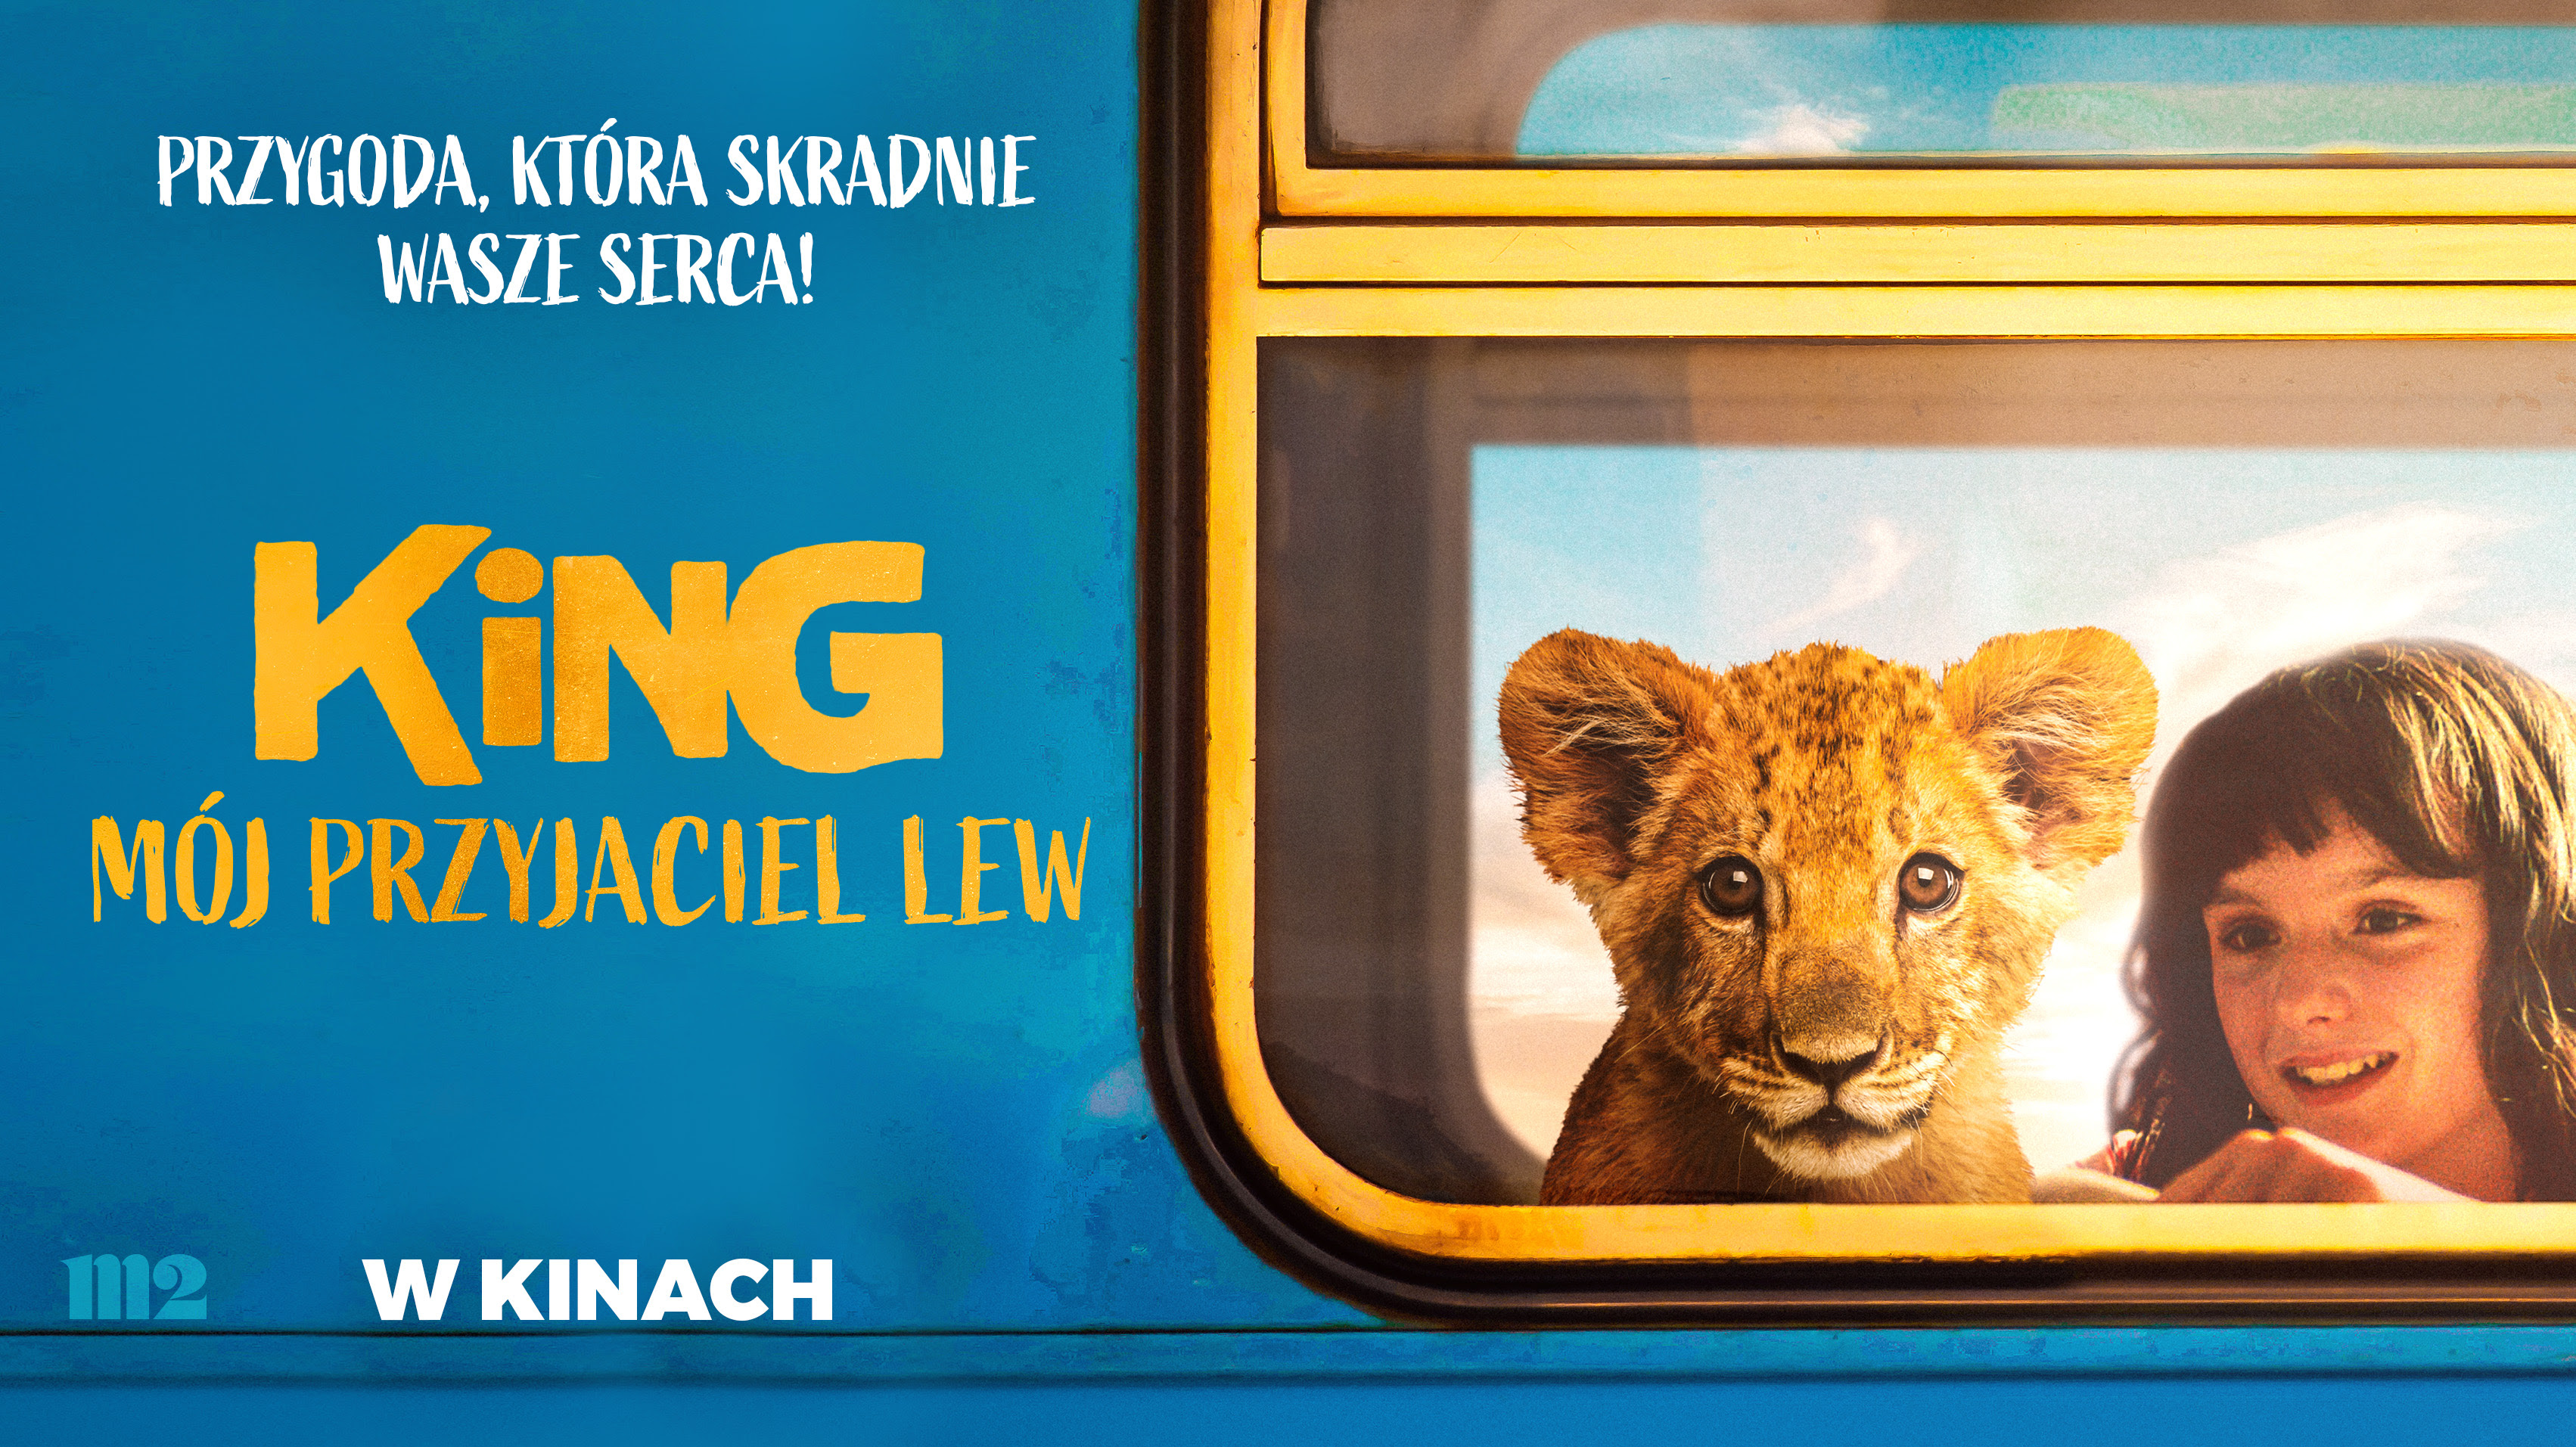 King: Mój przyjaciel lew” już od piątku w kinach!